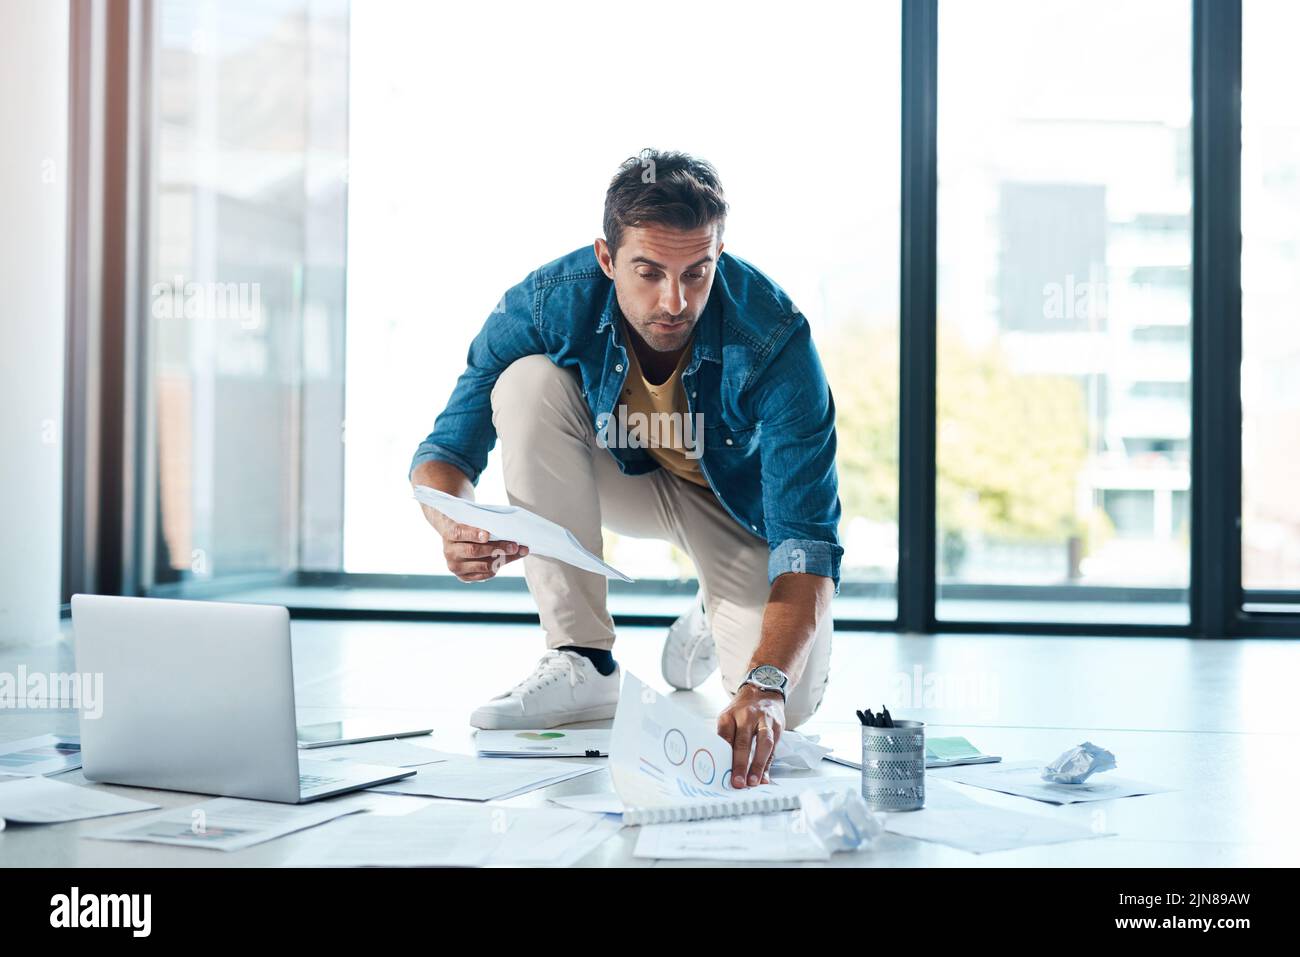 Mutige Ideen brauchen viel Platz zum Verweilen. Ein junger Geschäftsmann, der mit Papierkram auf einer Etage in einem Büro Brainstorming. Stockfoto